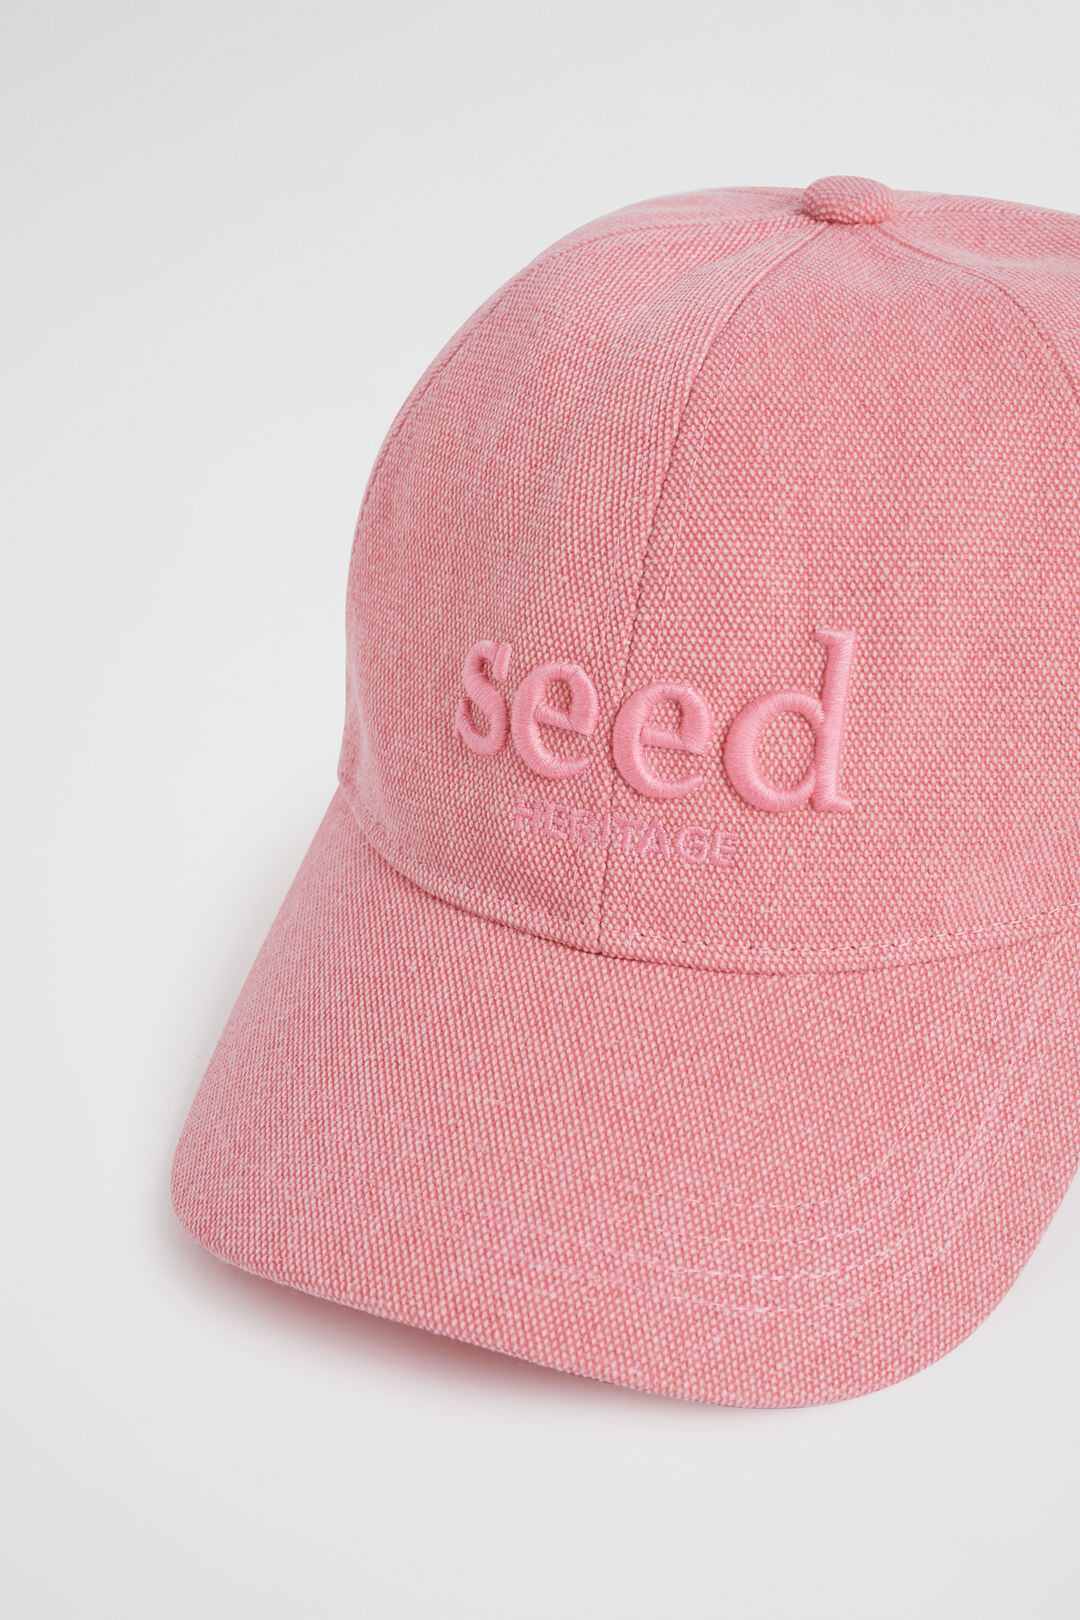 Seed Cap  Bubblegum Pink  hi-res